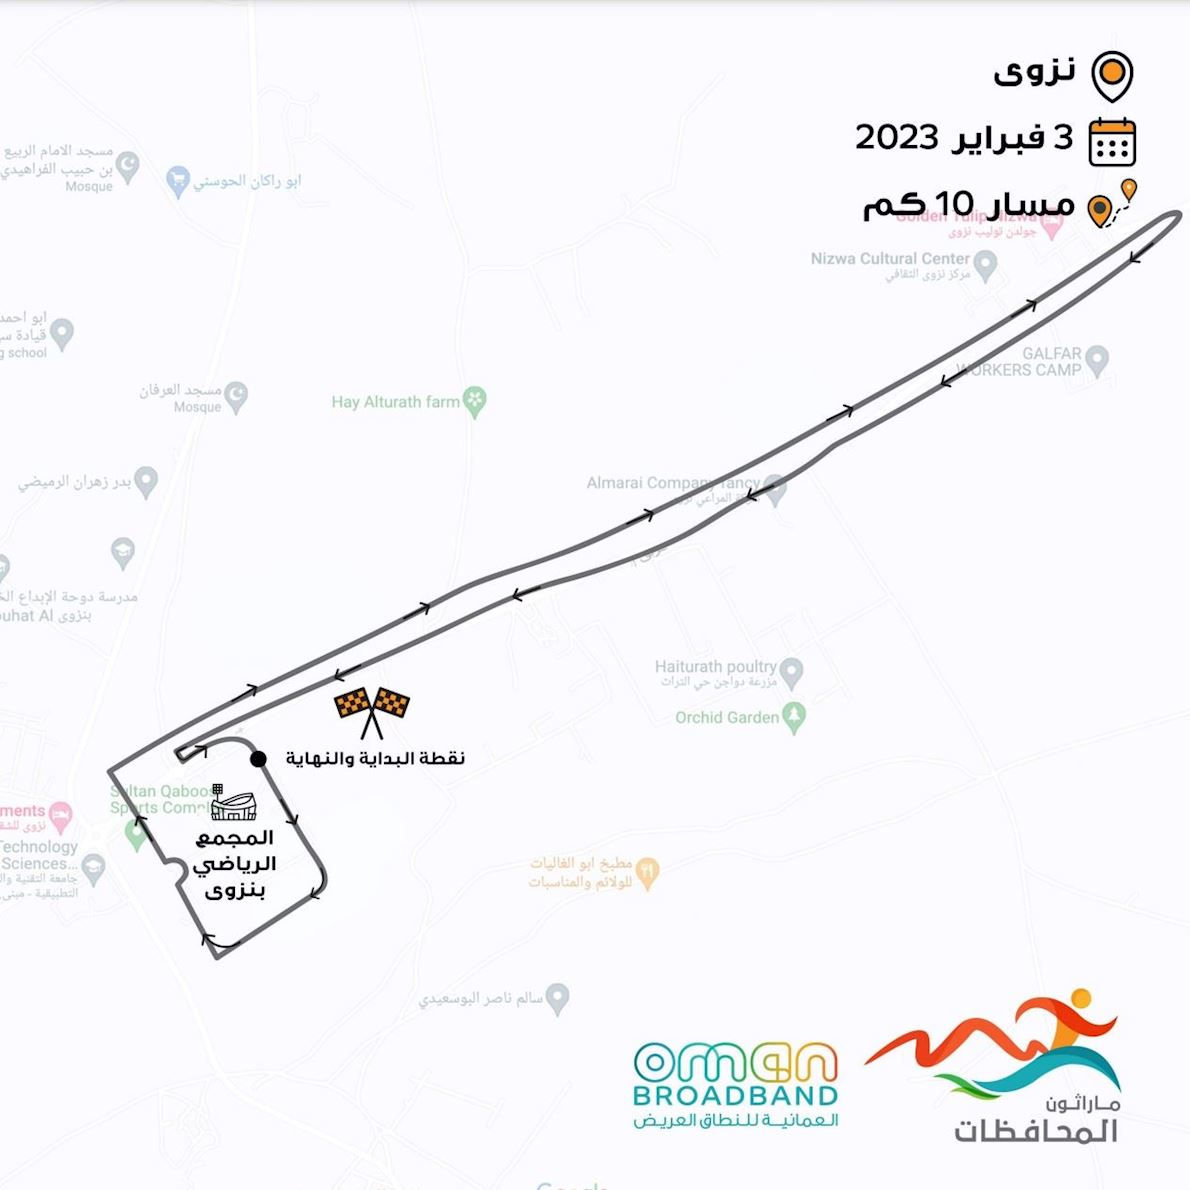 Oman Broadband Governorates Marathon Mappa del percorso